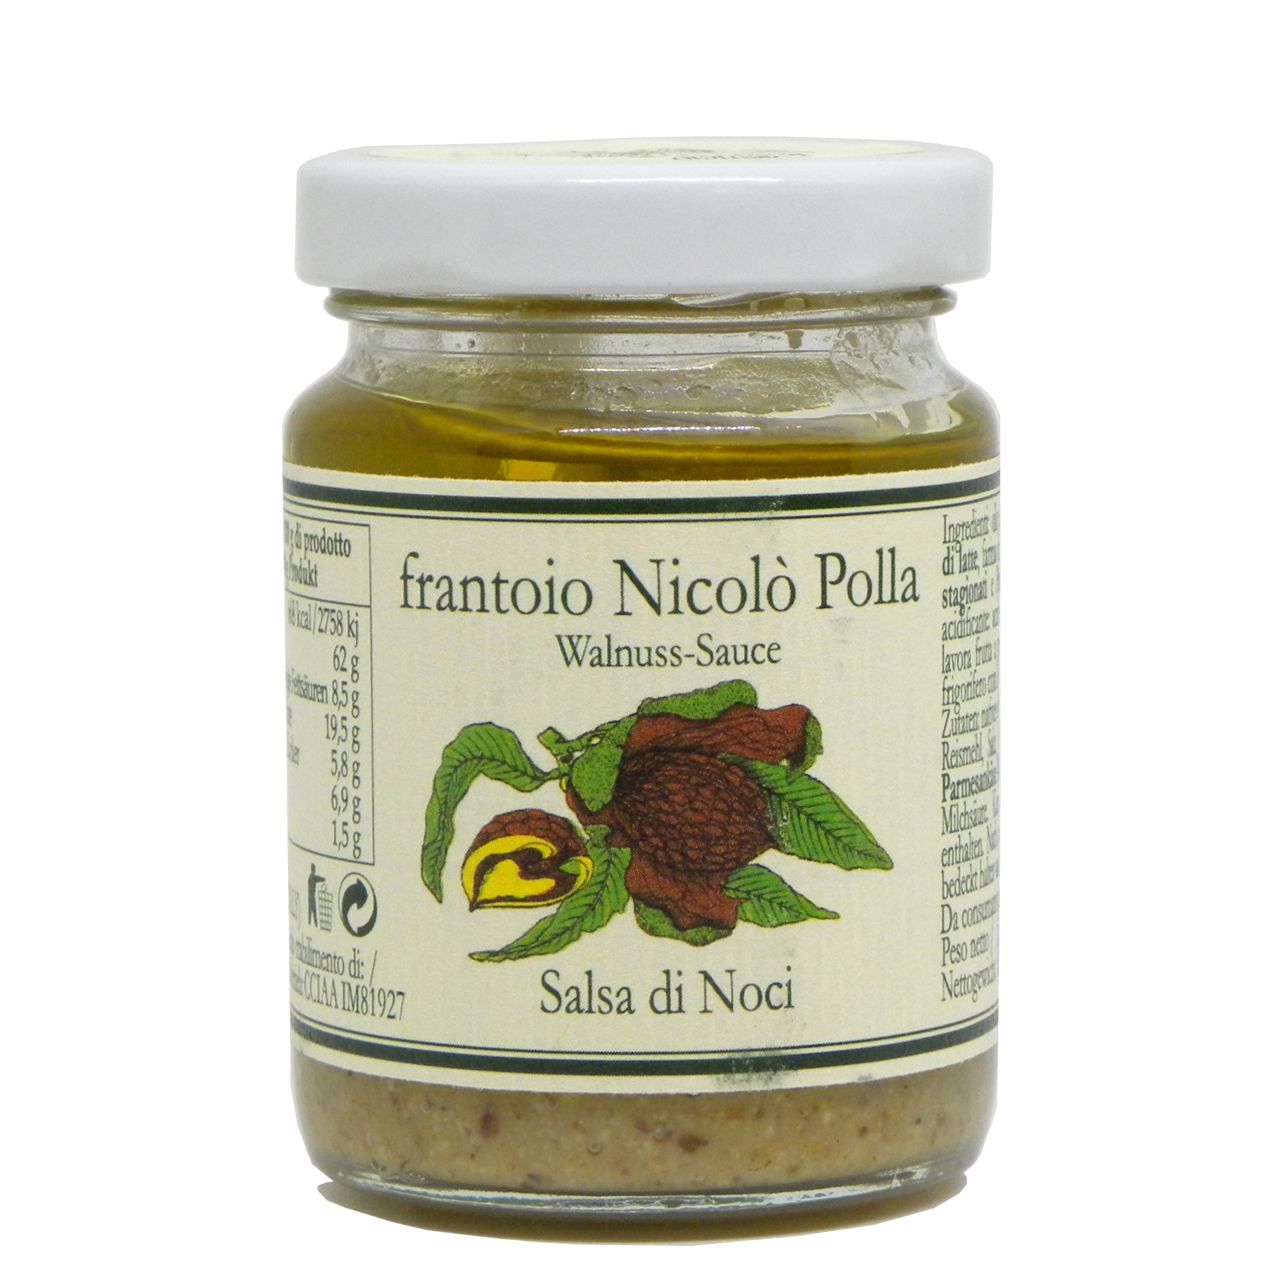 Salsa di noci in olio extravergine Frantoio Polla Nicolò – Frantoio Polla Nicolò Walnut Sauce in Extra Virgin Olive Oil – Gustorotondo – Italian food boutique